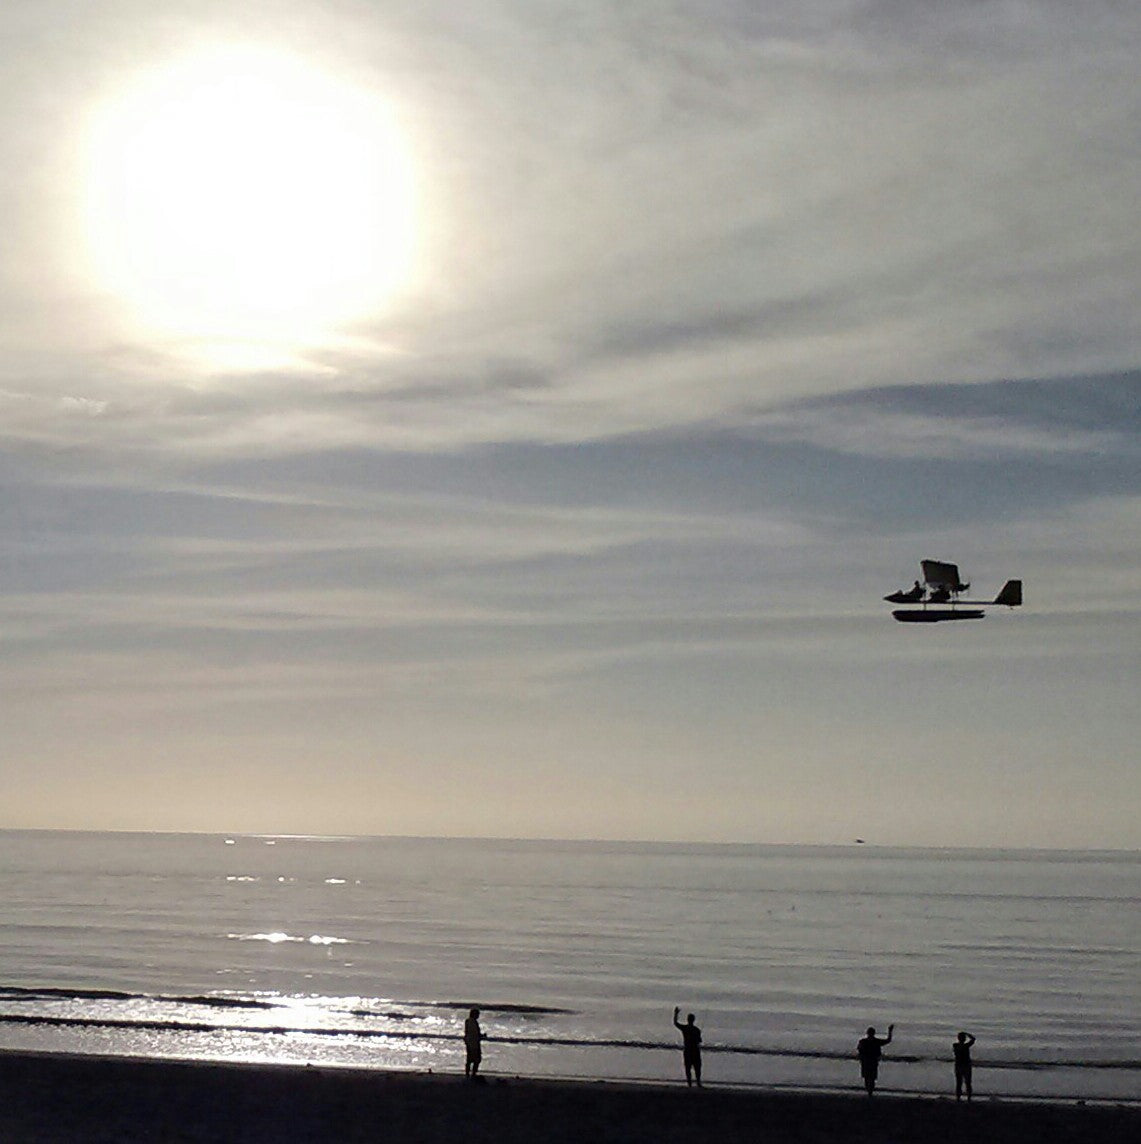 Drifter flying along the beach before sunset.